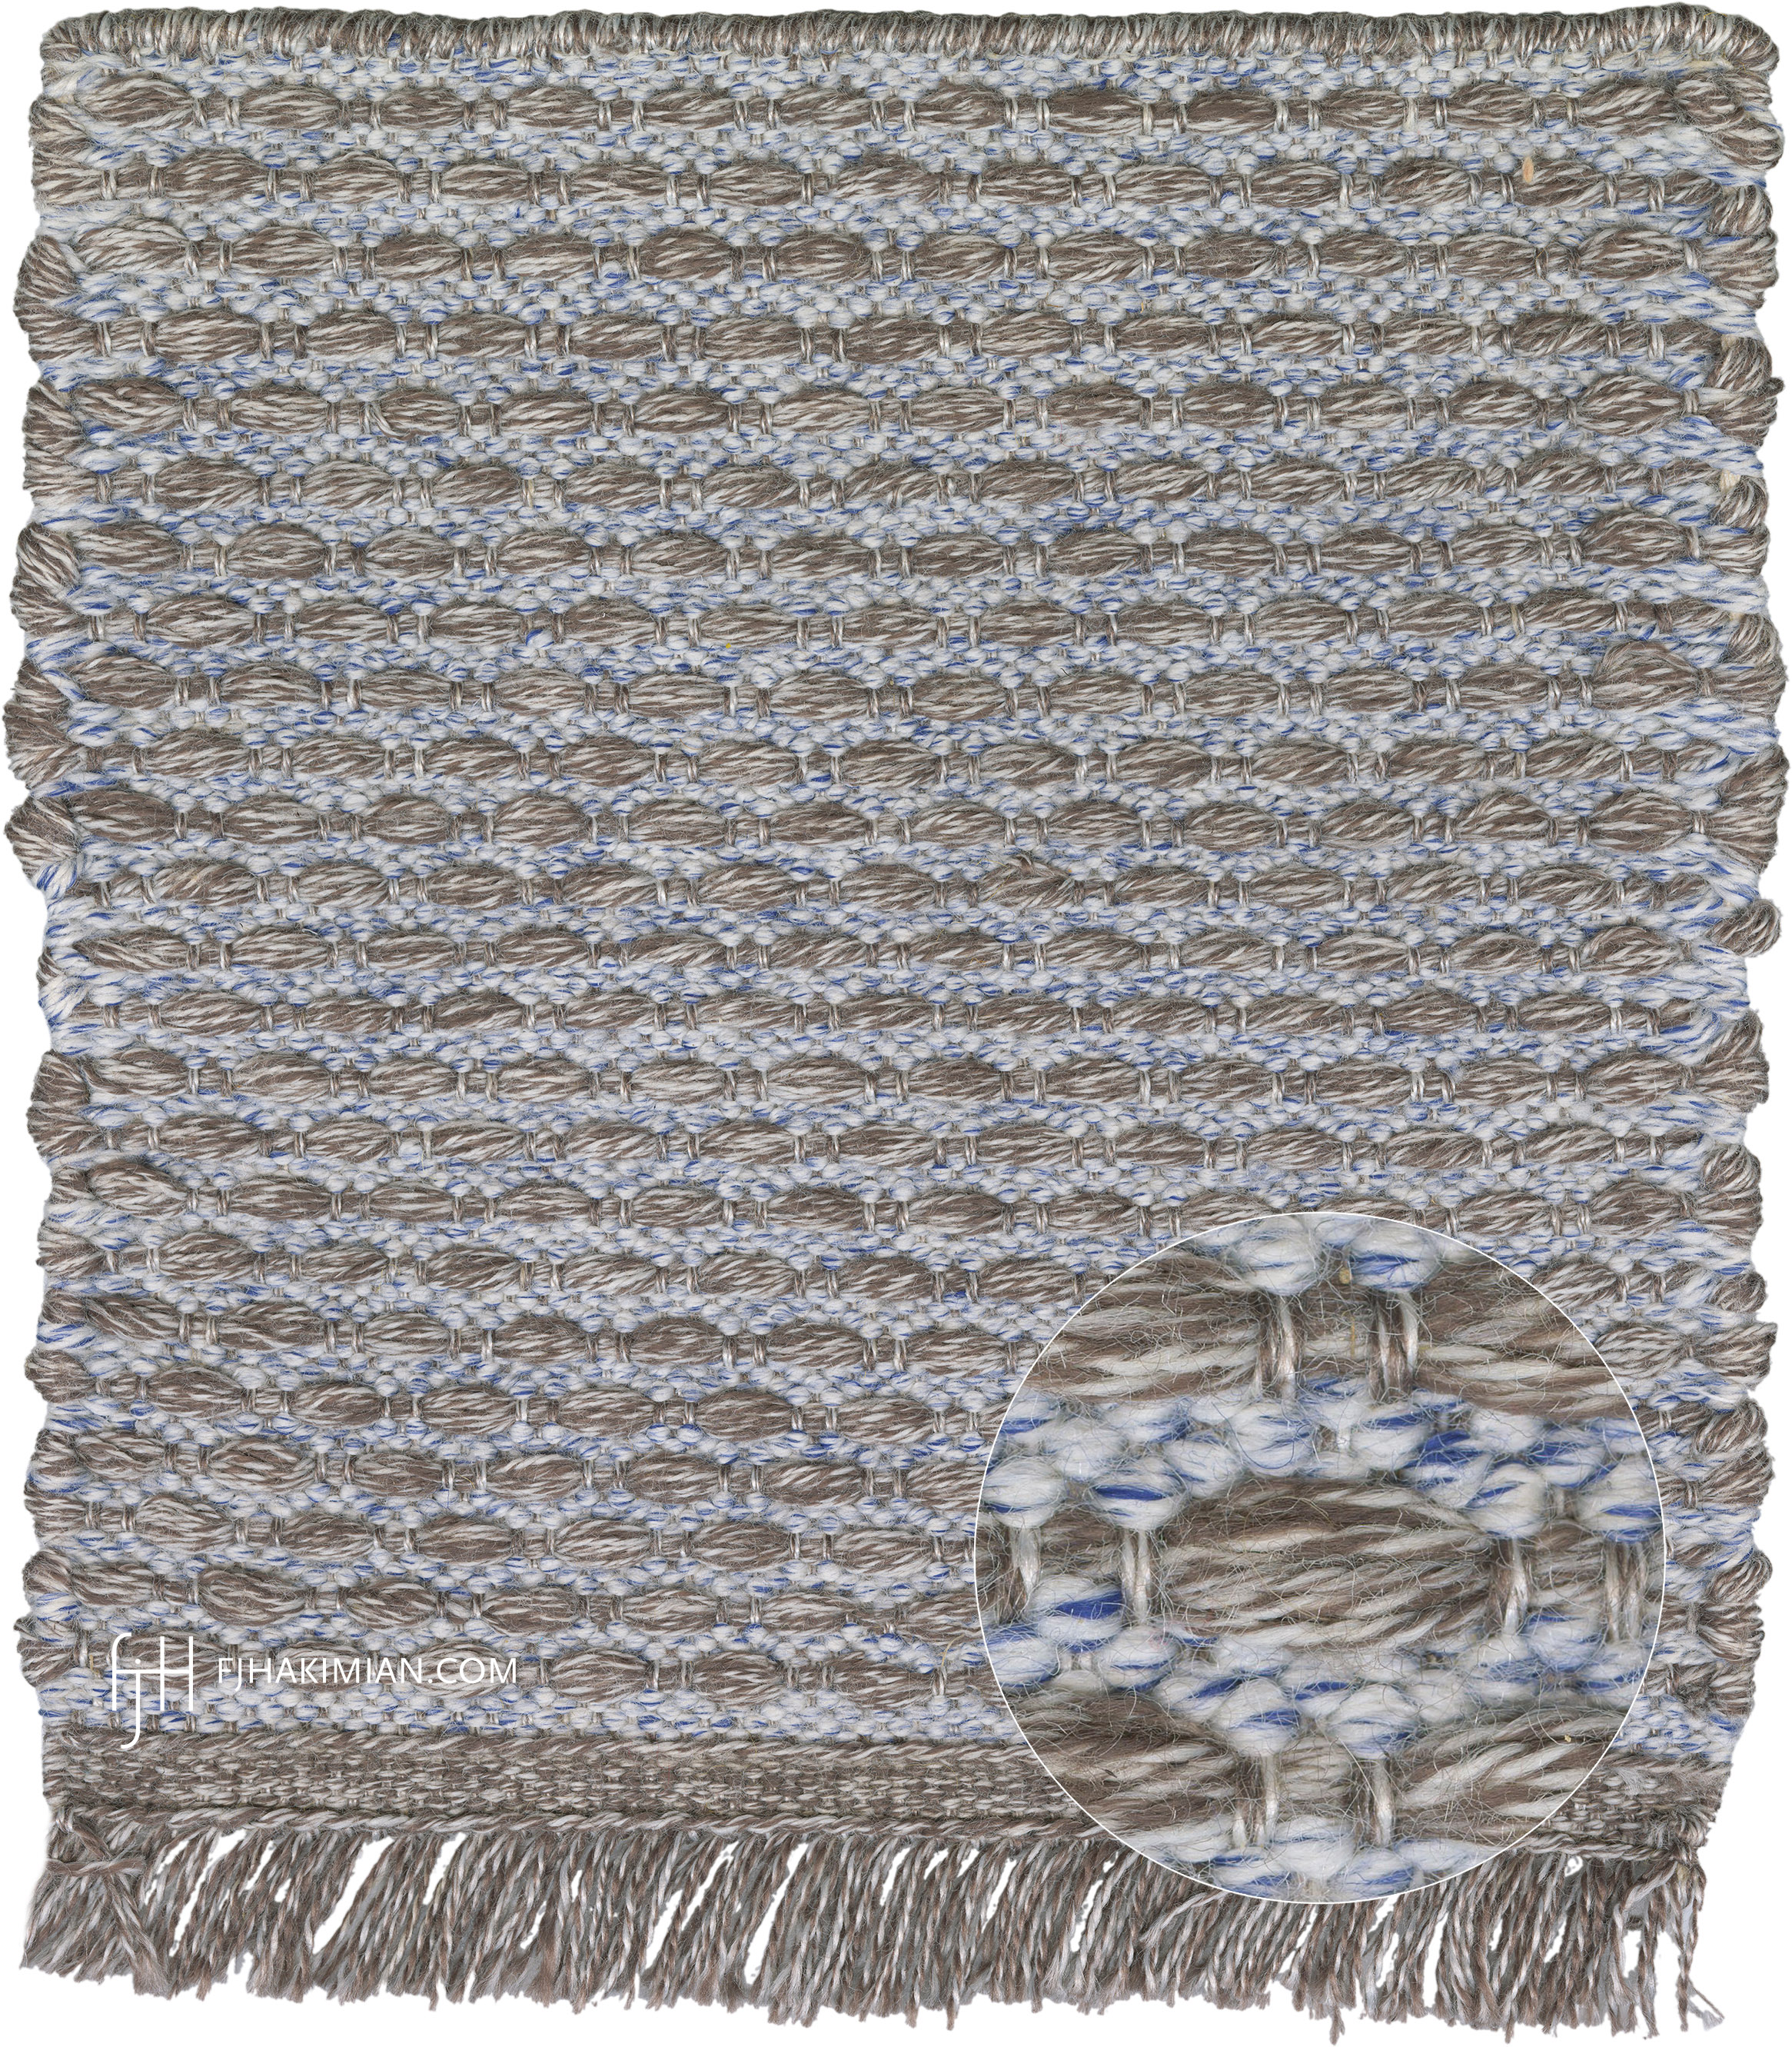 Polypropylene | Custom Indoor & Outdoor Carpet | FJ Hakimian | Carpet Gallery in NYC